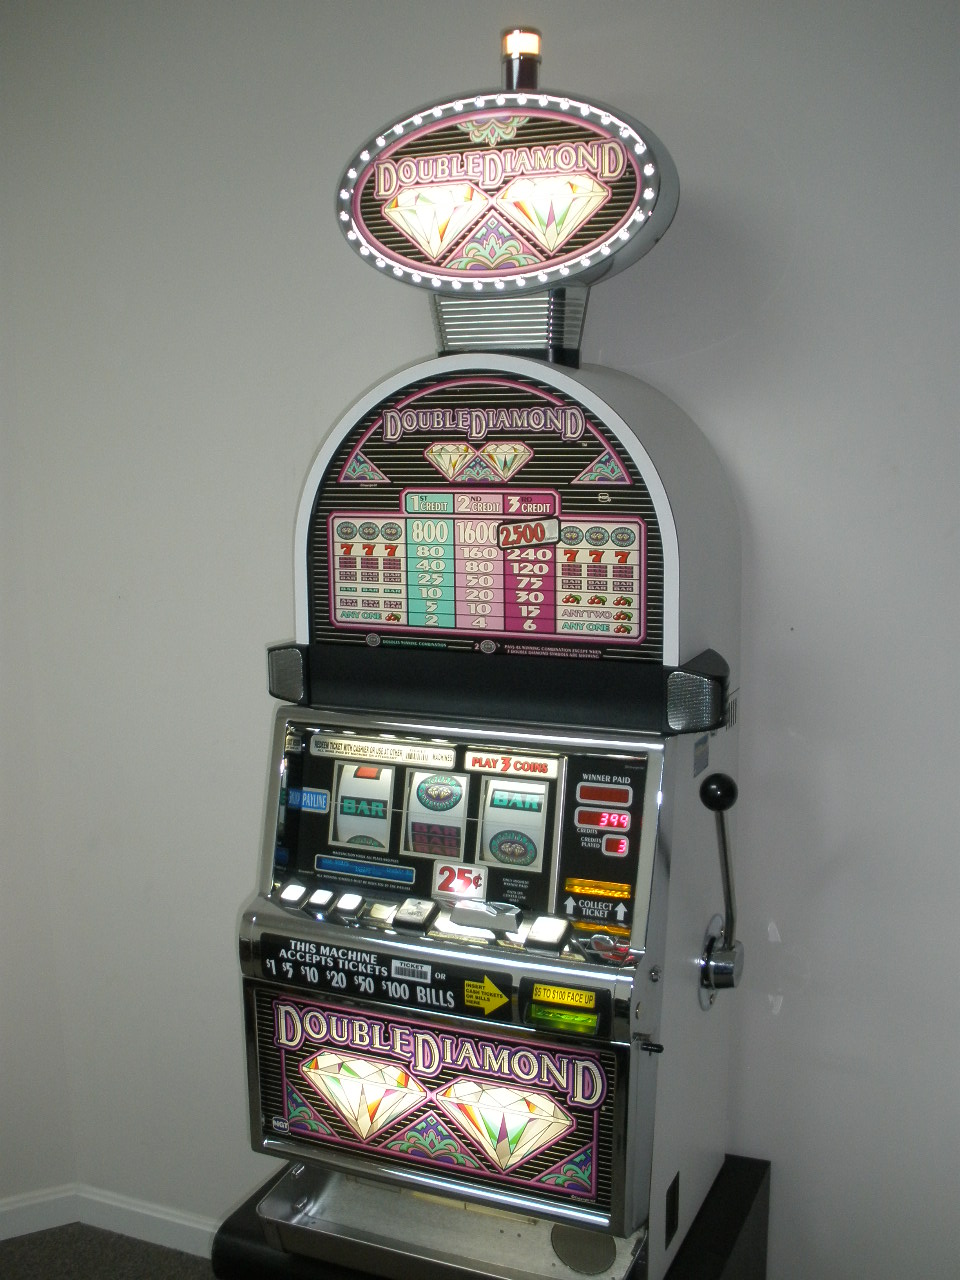 White King Slot Machine